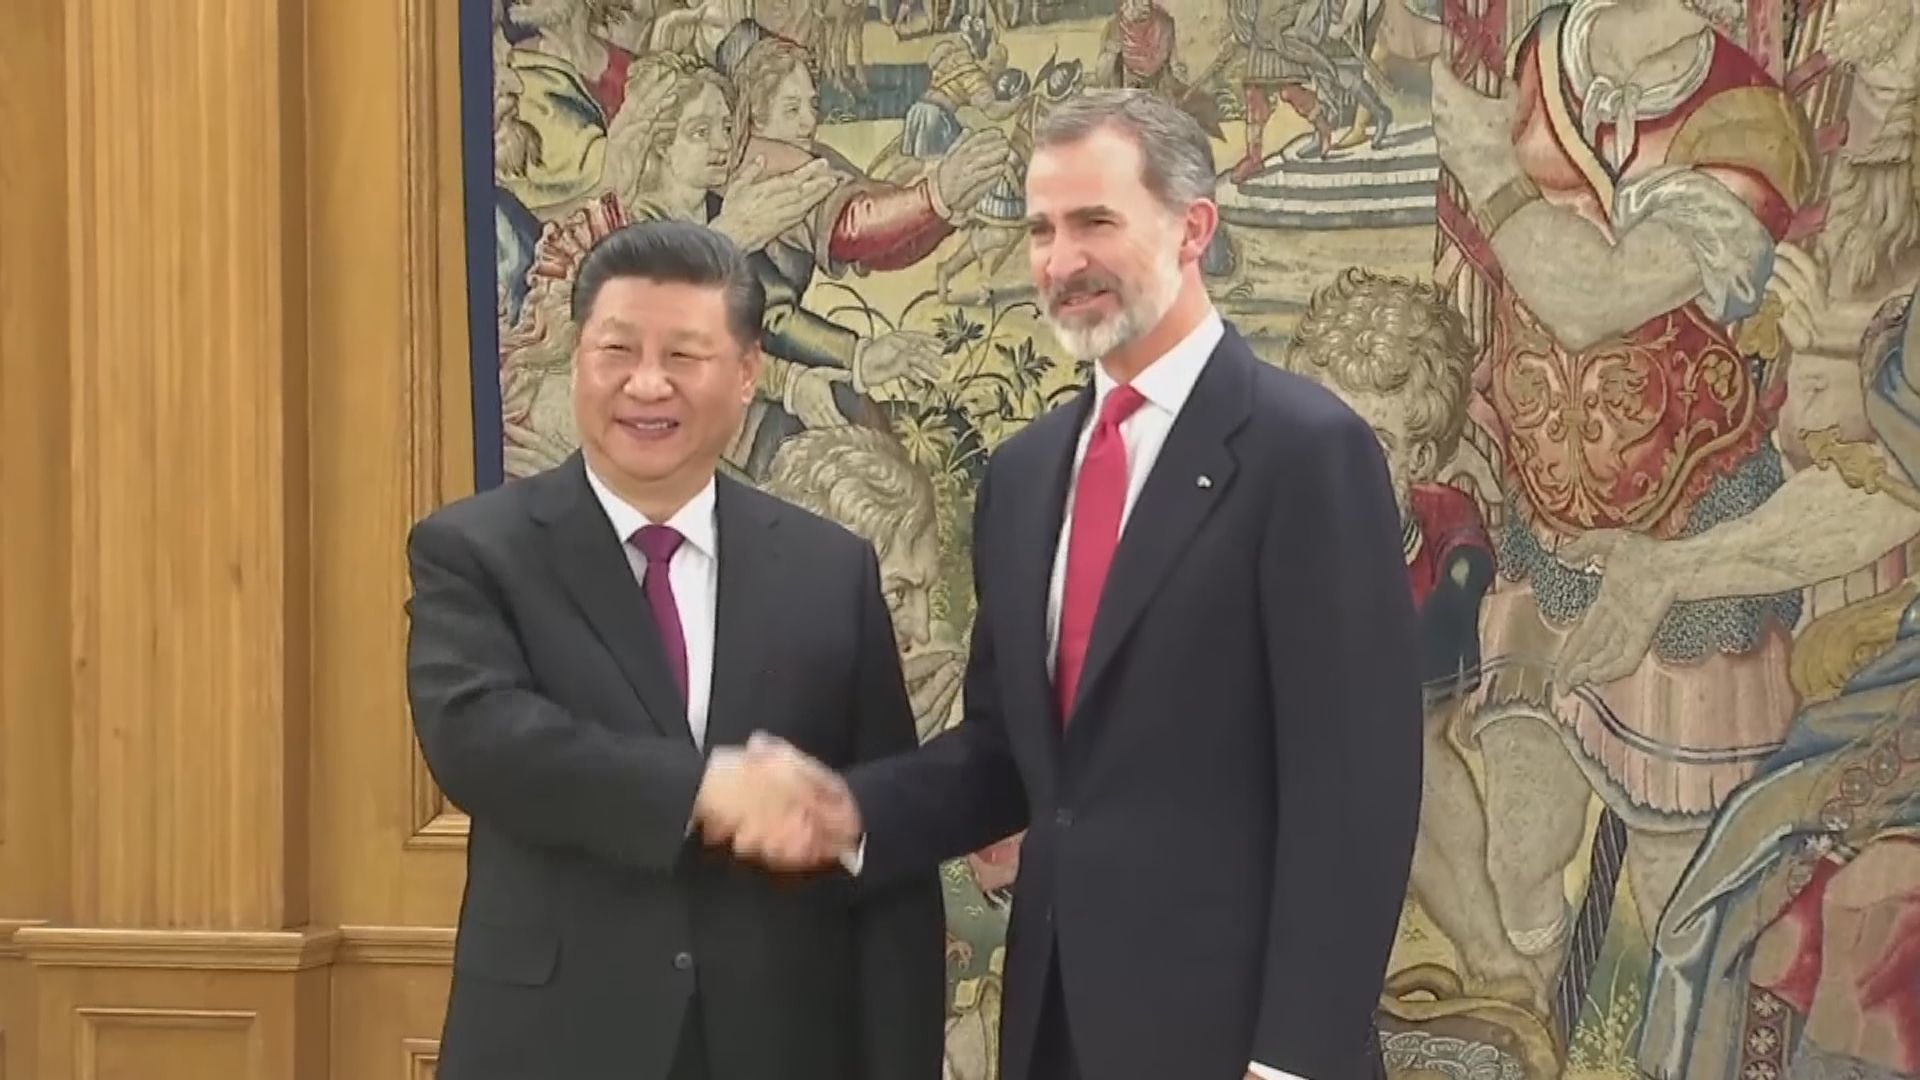 習近平國事訪問西班牙將簽署多項經貿協議